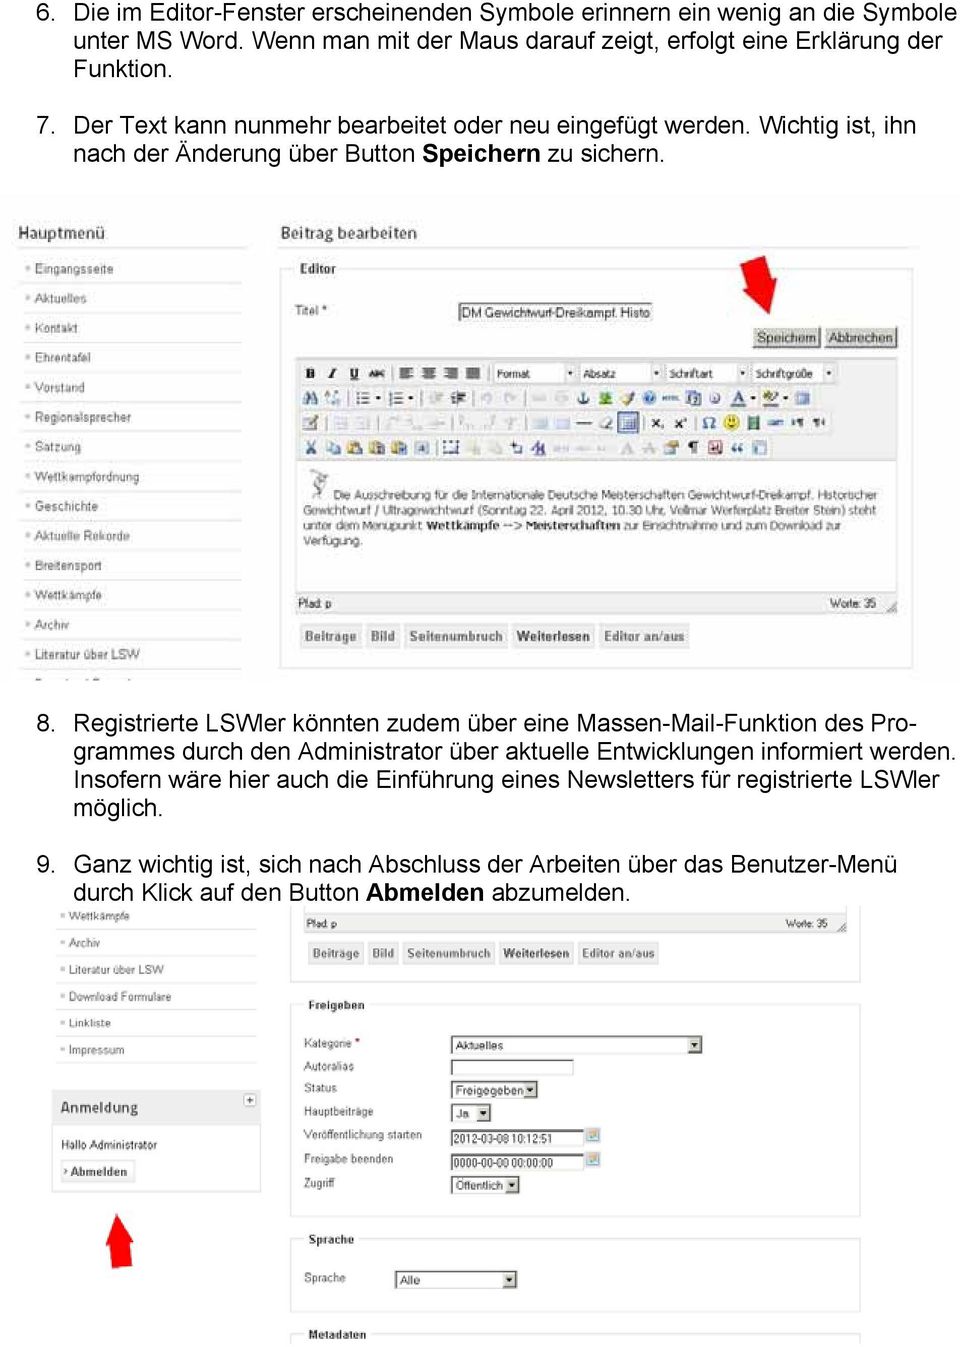 Registrierte LSWler könnten zudem über eine Massen-Mail-Funktion des Programmes durch den Administrator über aktuelle Entwicklungen informiert werden.